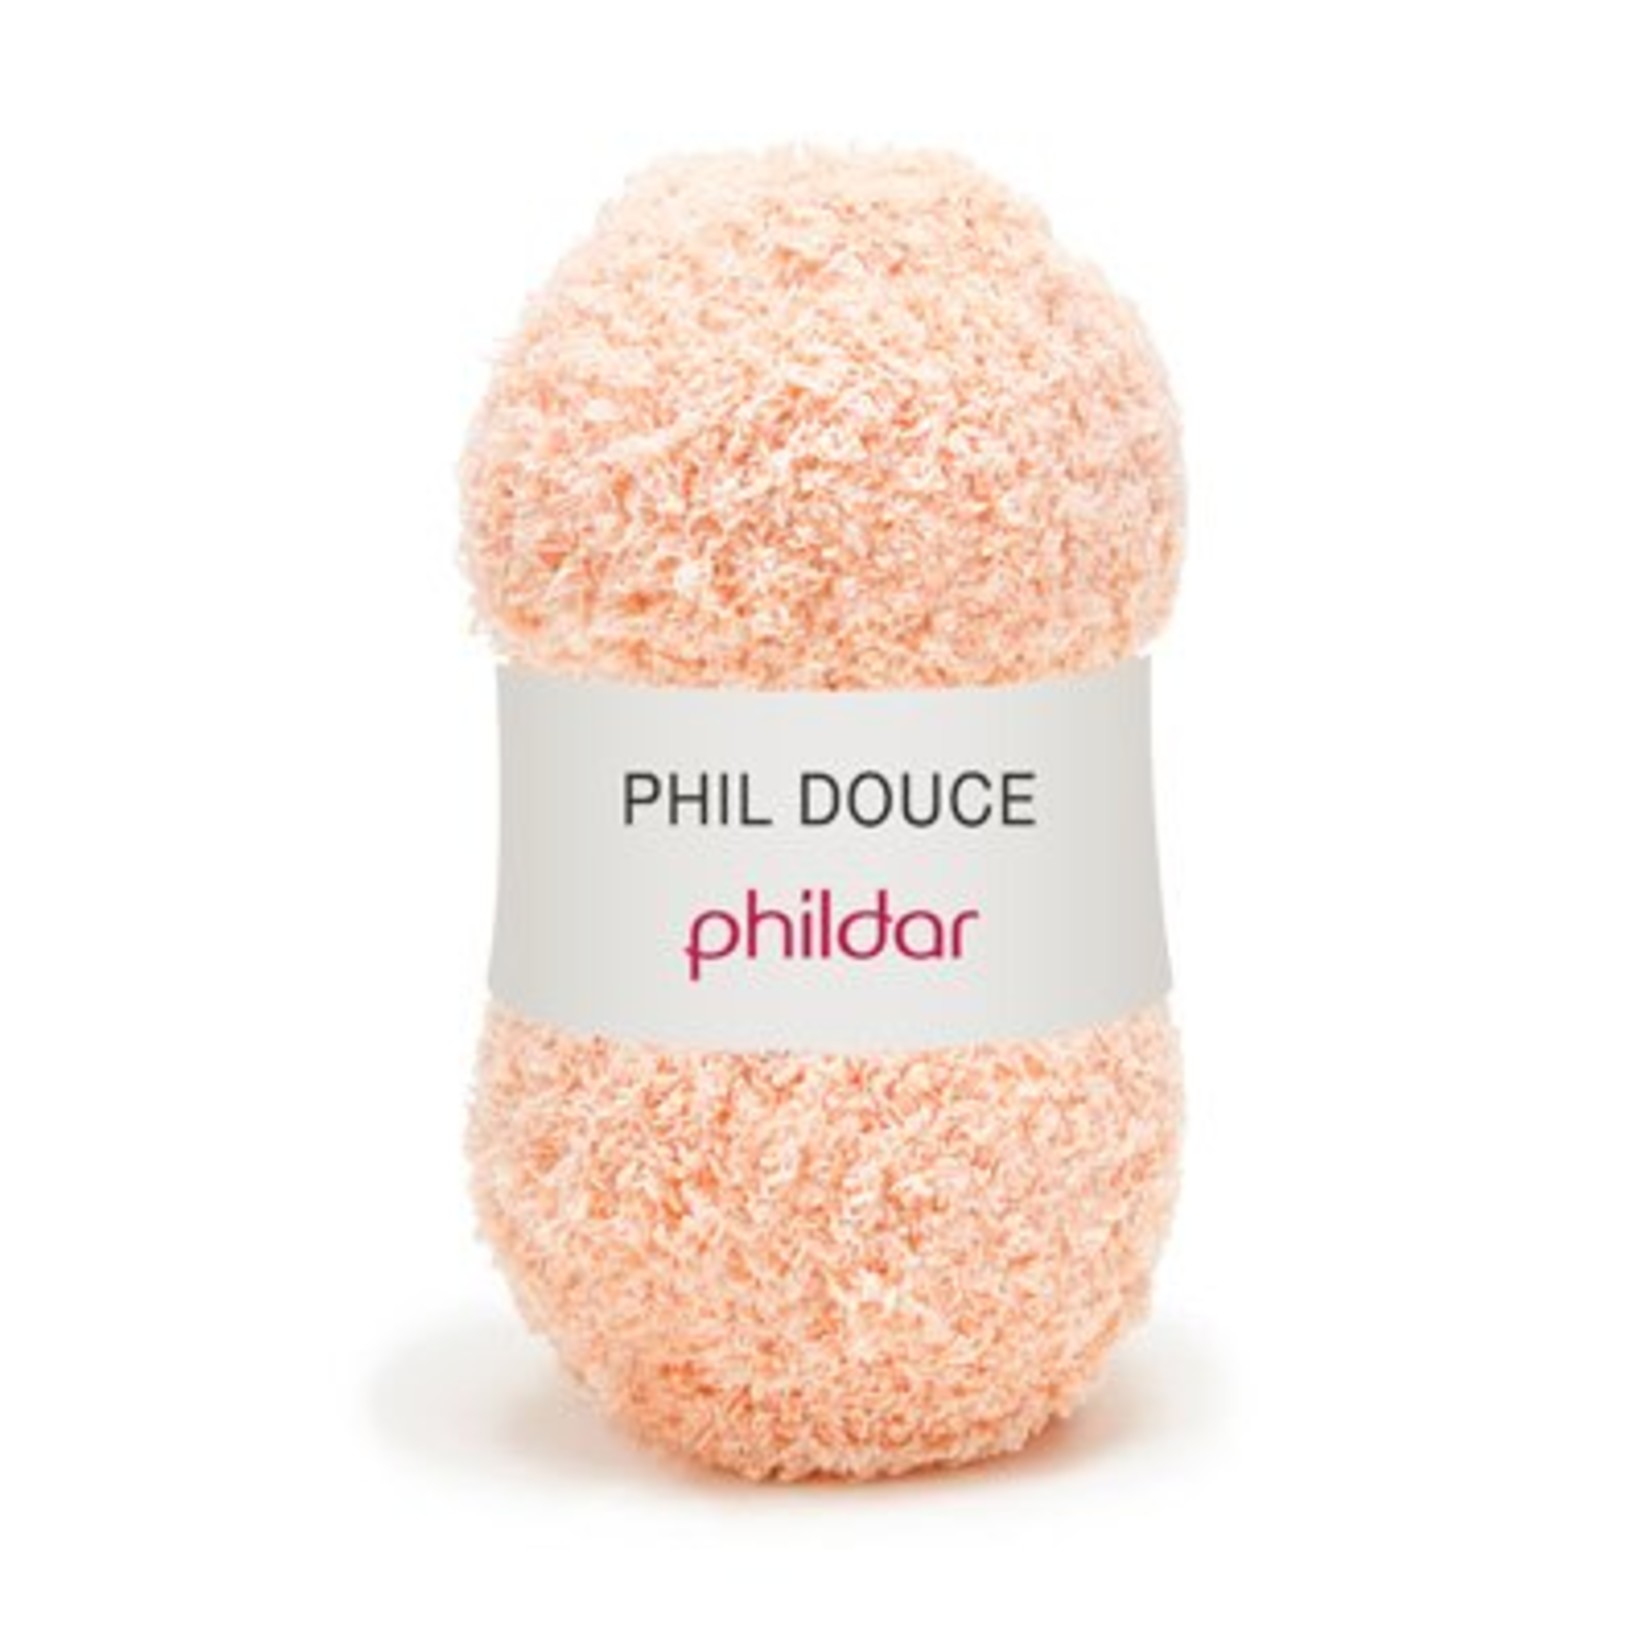 Phildar Phil Douce Poudre